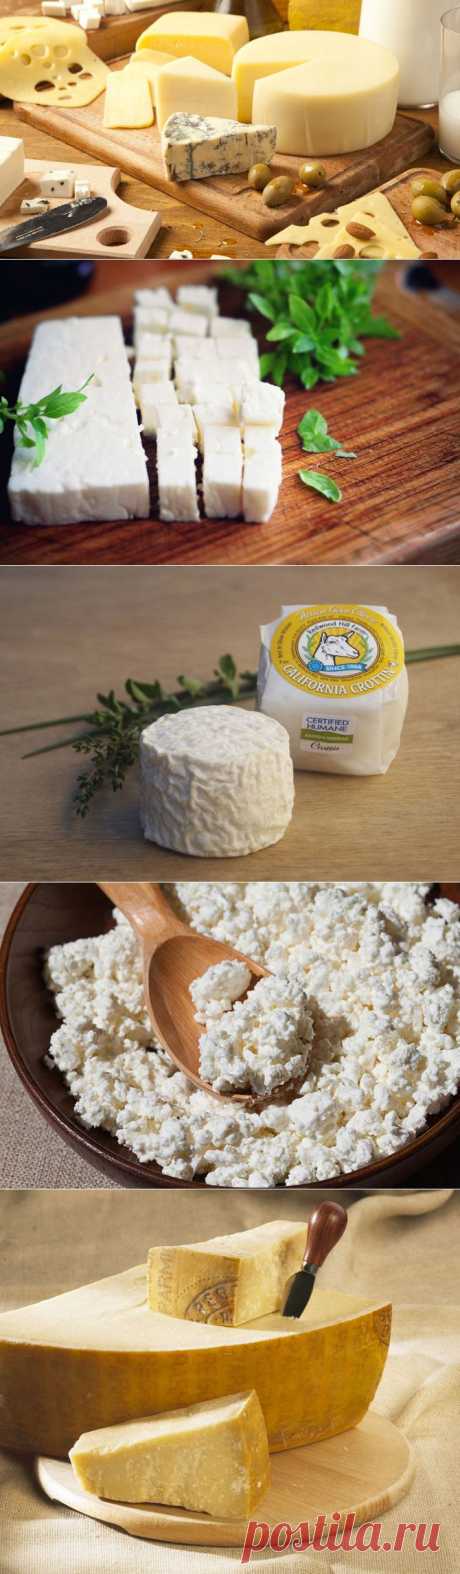 Какой сыр самый полезный и почему? — Вкусные рецепты